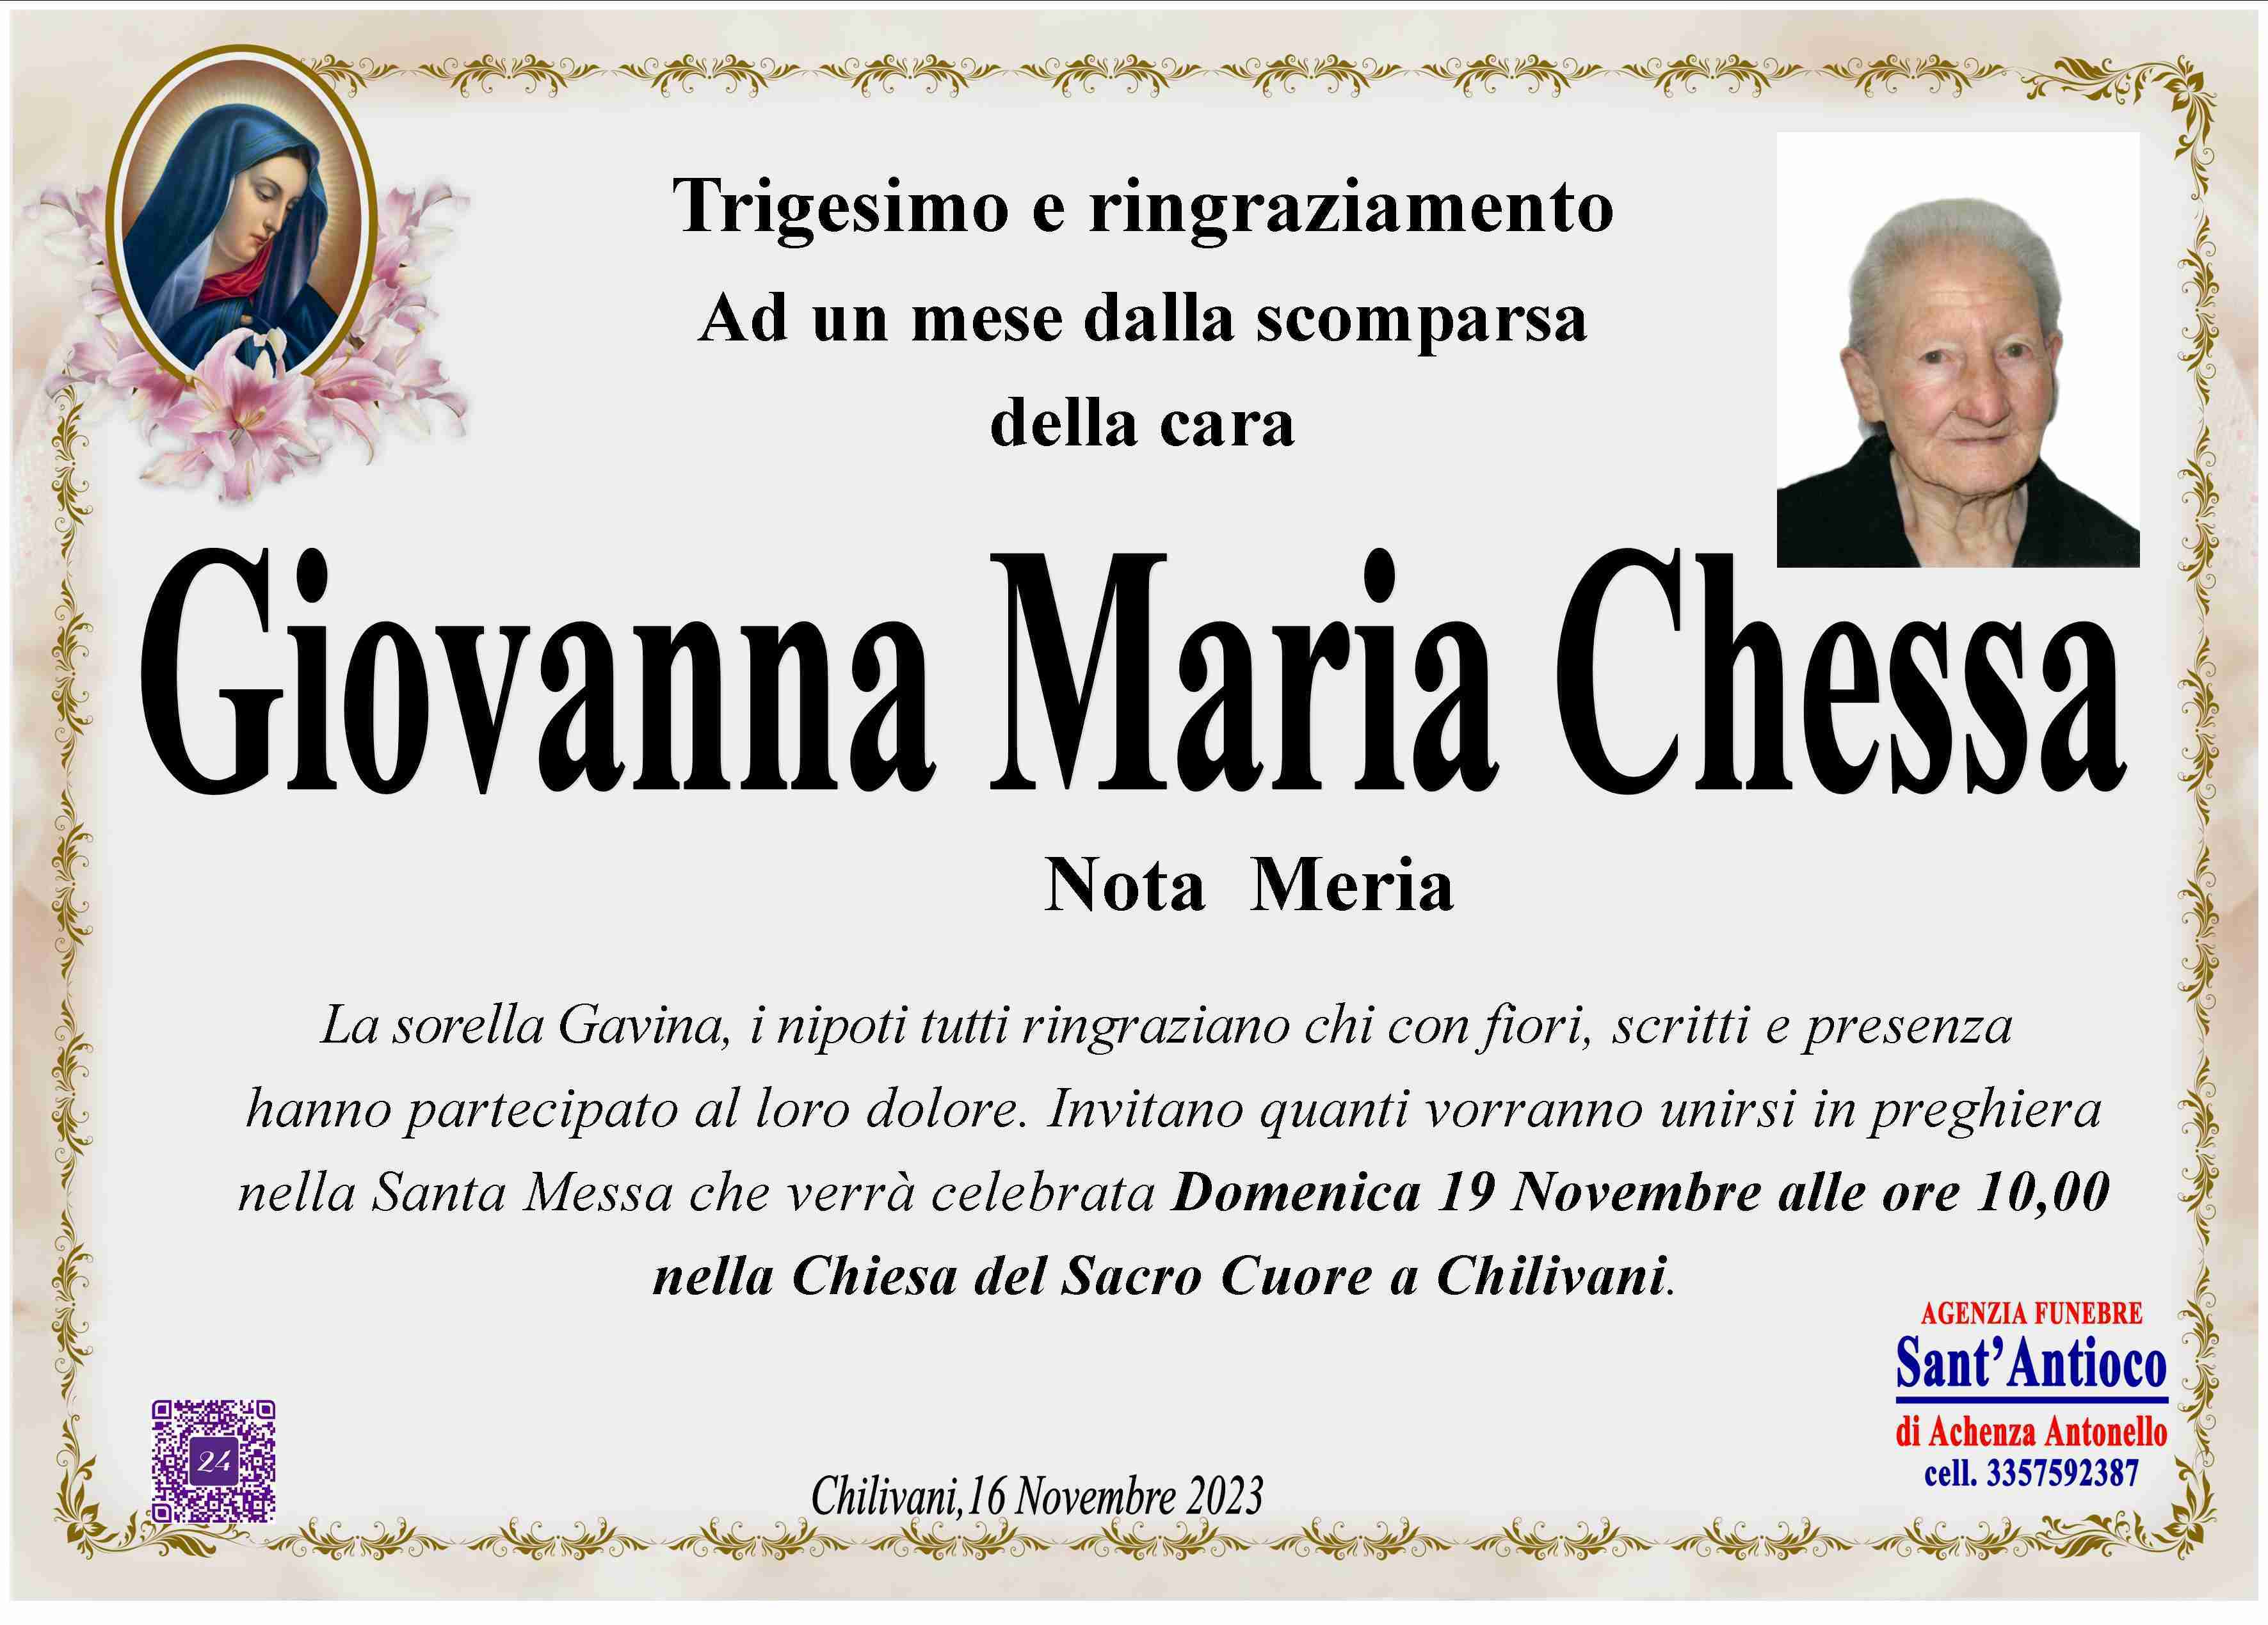 Giovanna Maria Chessa